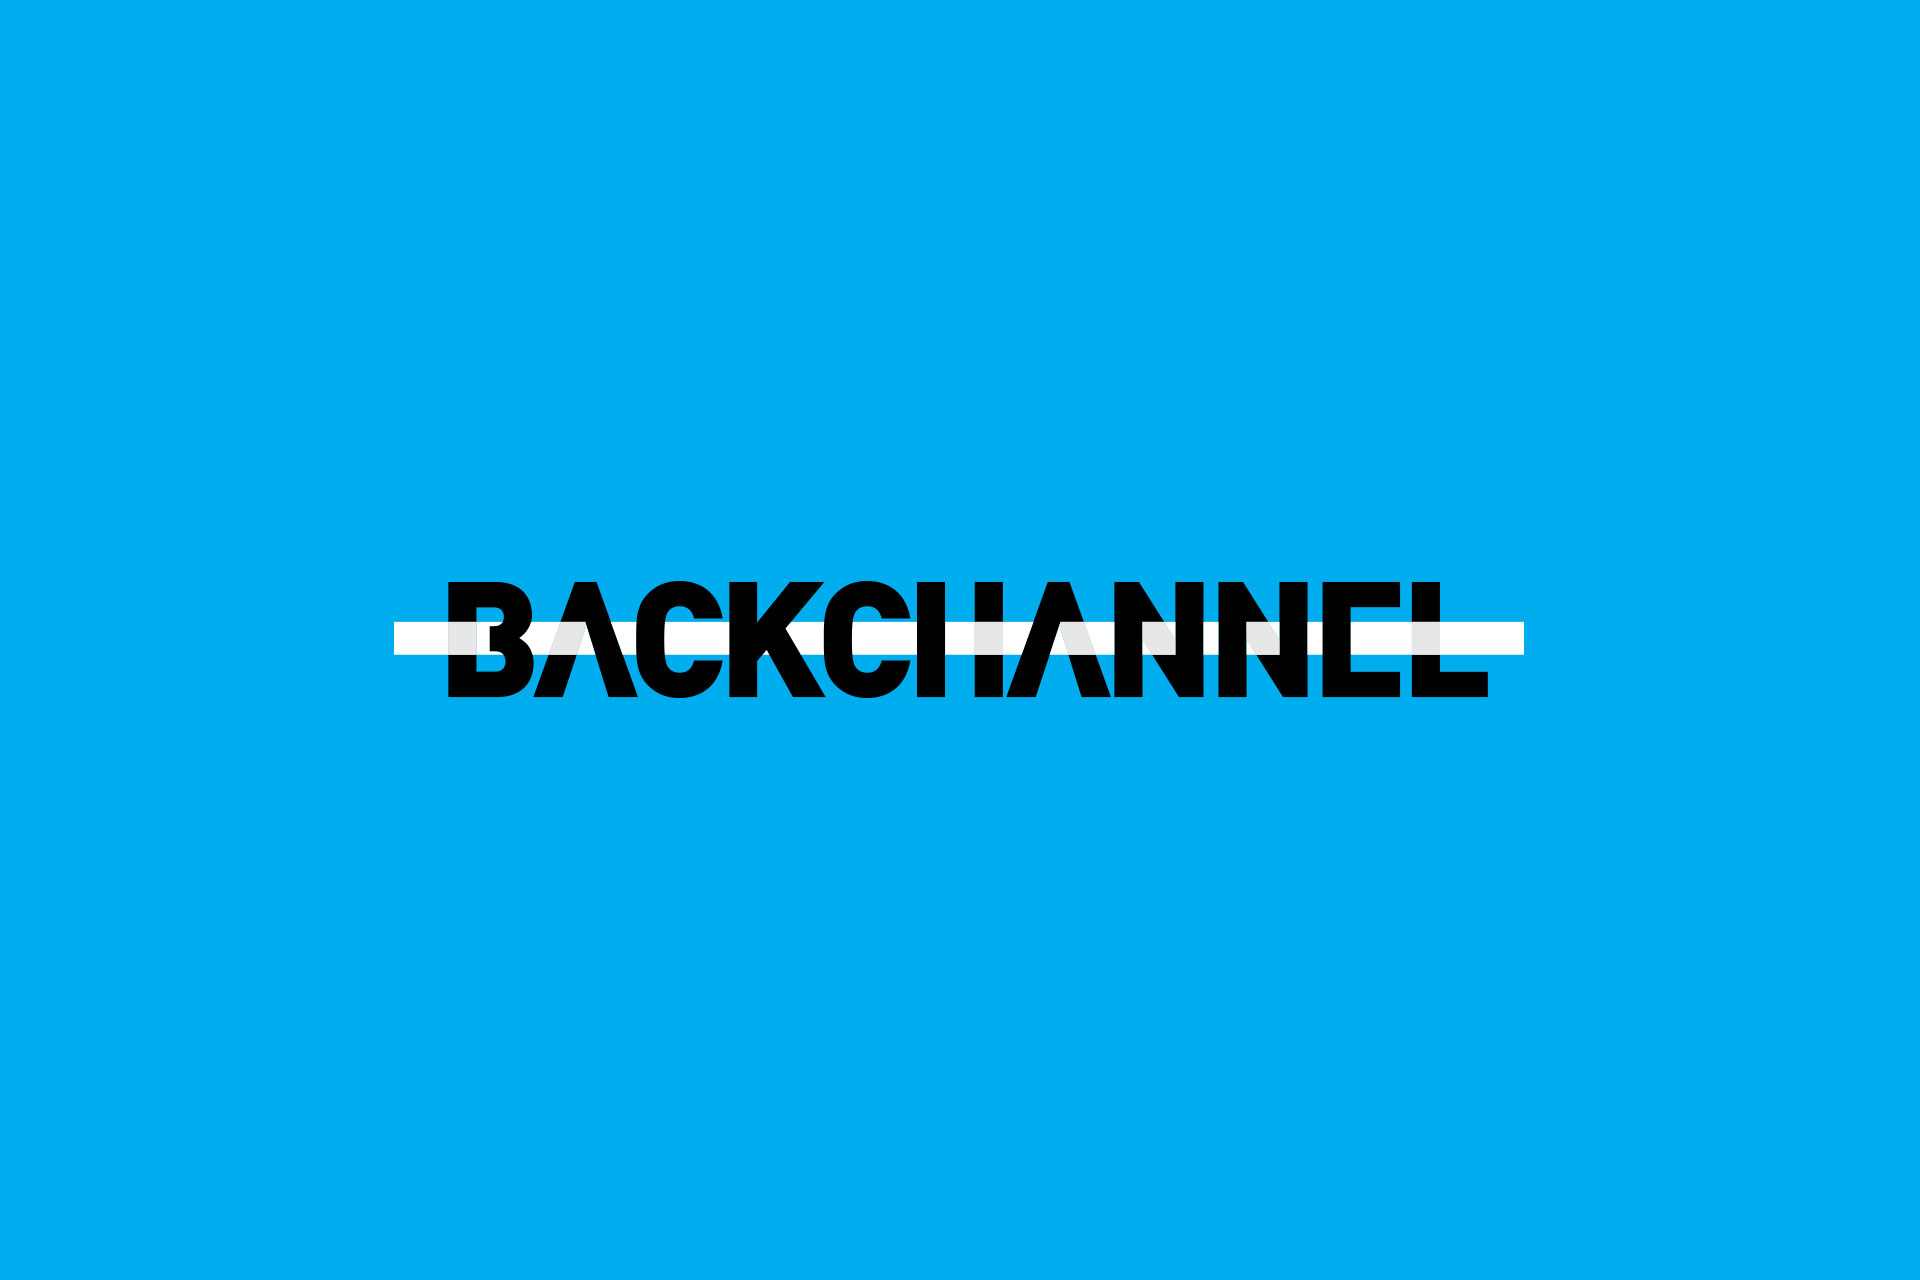 Backchannel